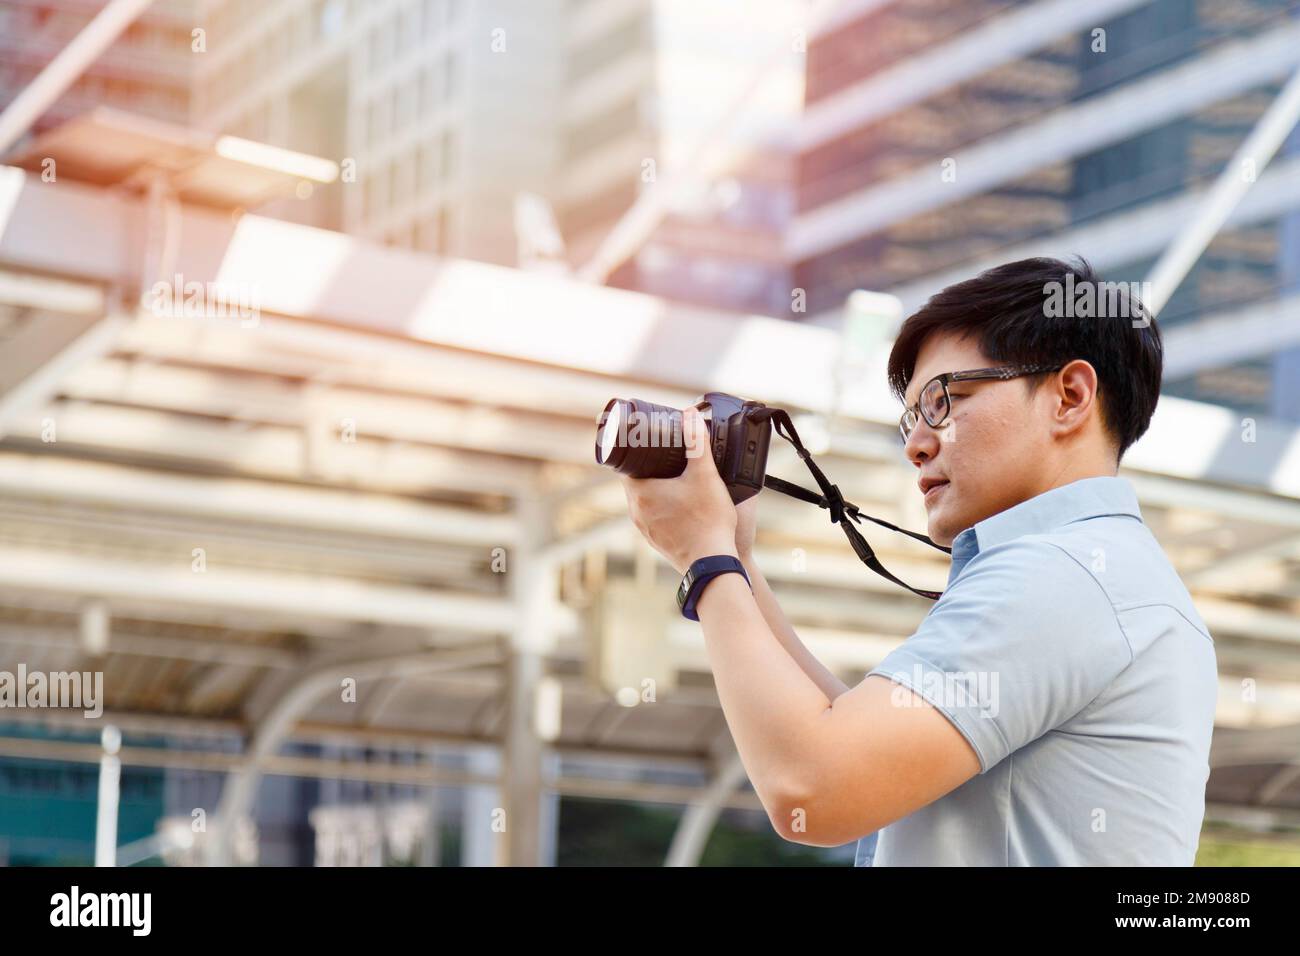 Jeune photographe asiatique tenant l'appareil photo pour prendre des photos de la ville. Plein air été style de vie portrait voyageur s'amusant avec la rue de tournage Banque D'Images